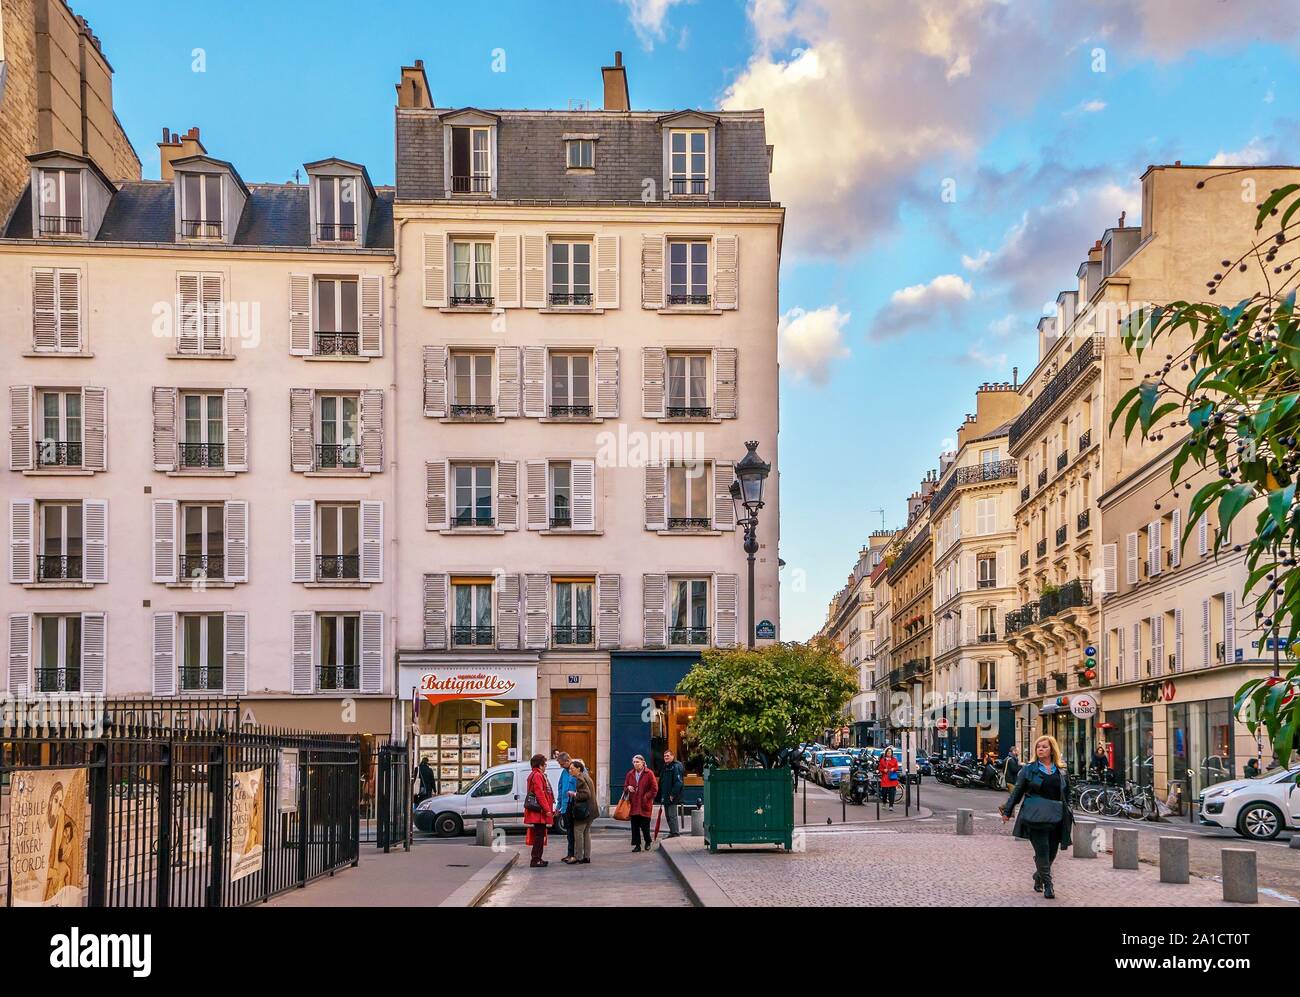 Anzeigen im traditionellen Pariser Stil in einem Wohnviertel im 17. Arrondissement in einer ruhigen Sonntag Nachmittag. Stockfoto